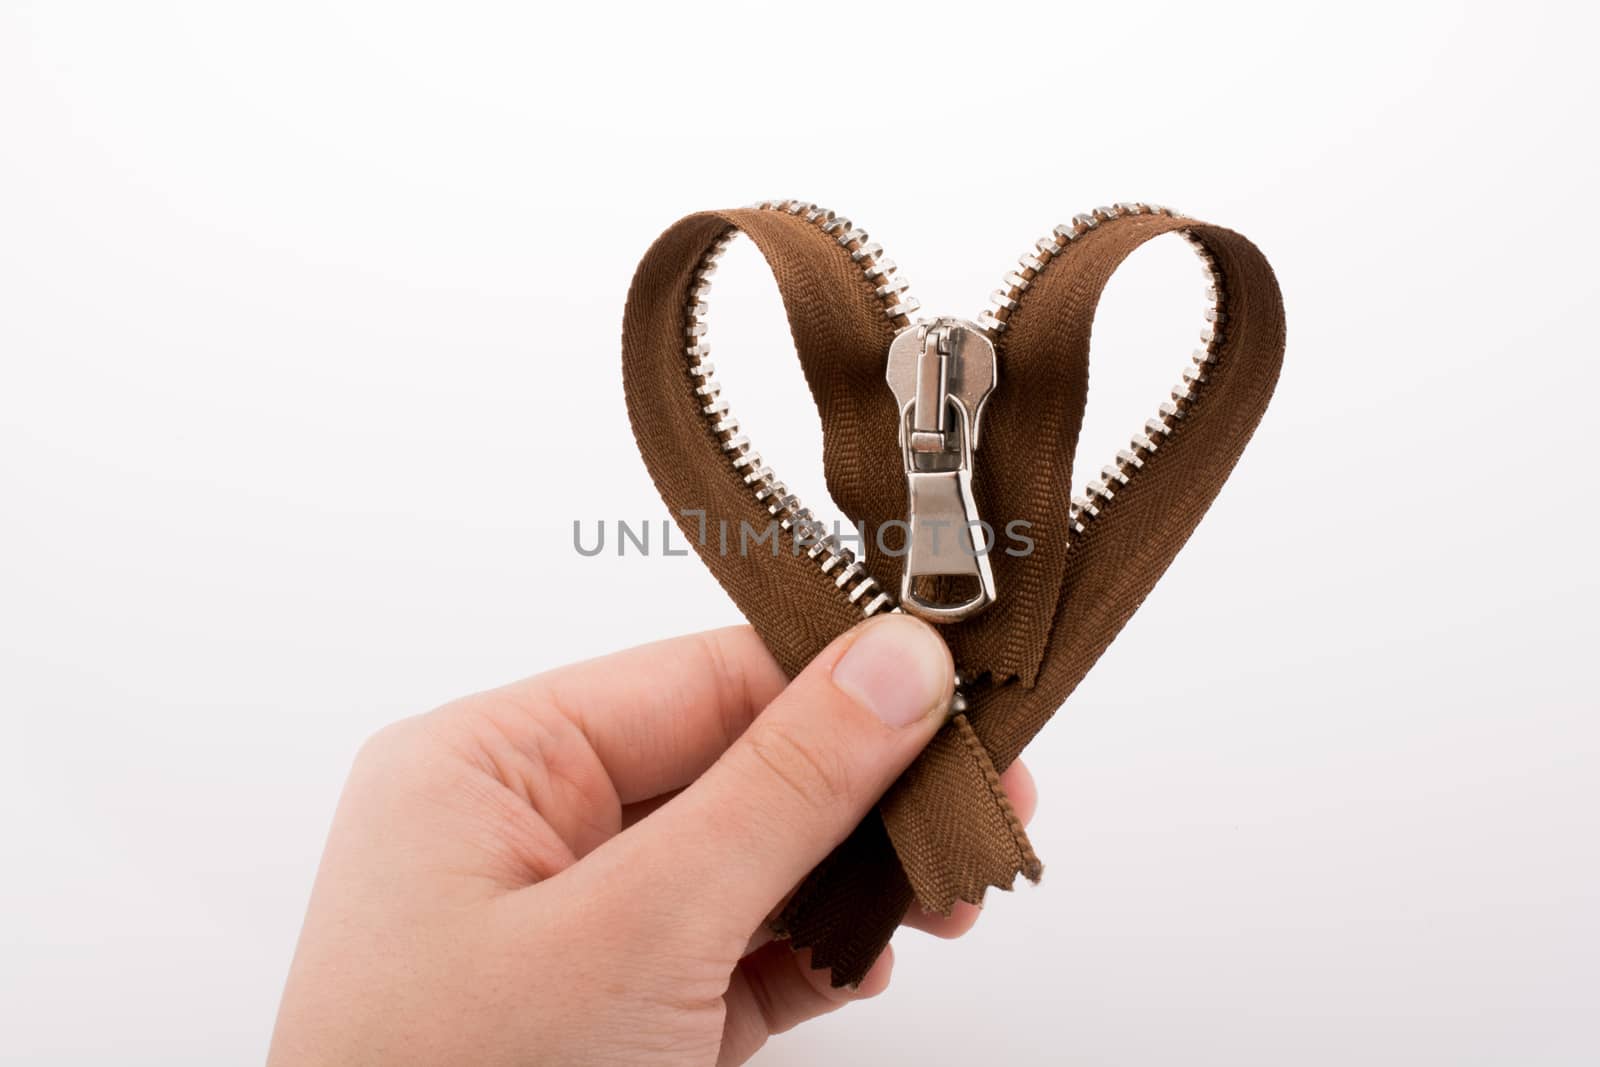 Zipper in the shape of a heart by berkay